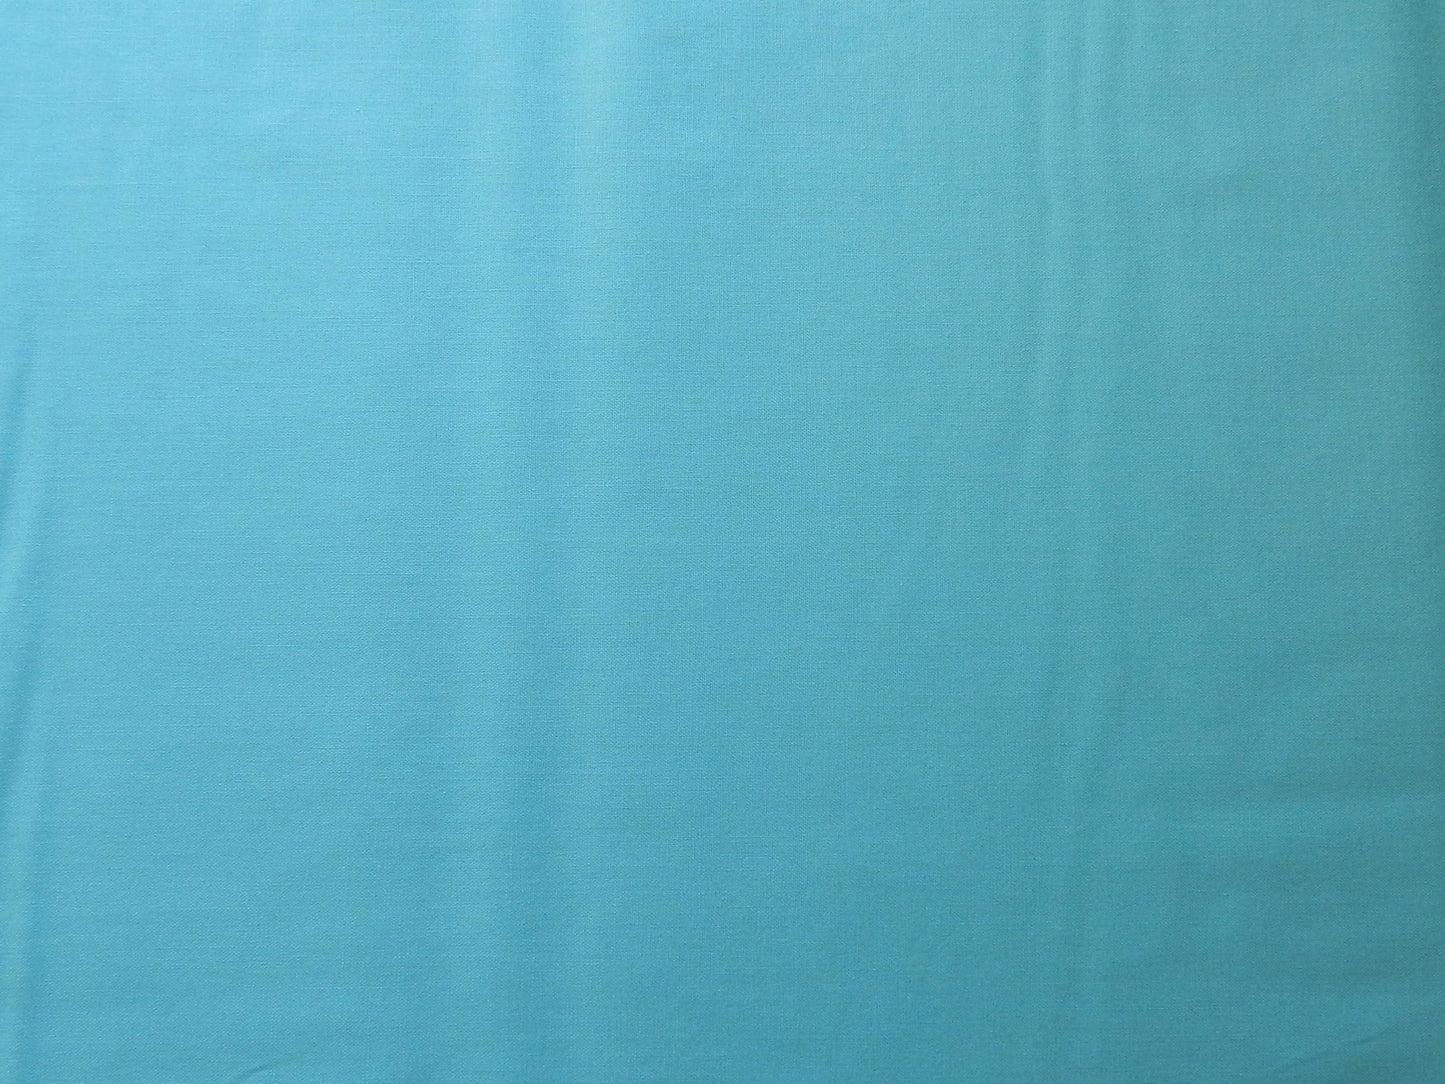 paintbrush studios aruba turquoise quilting fabric